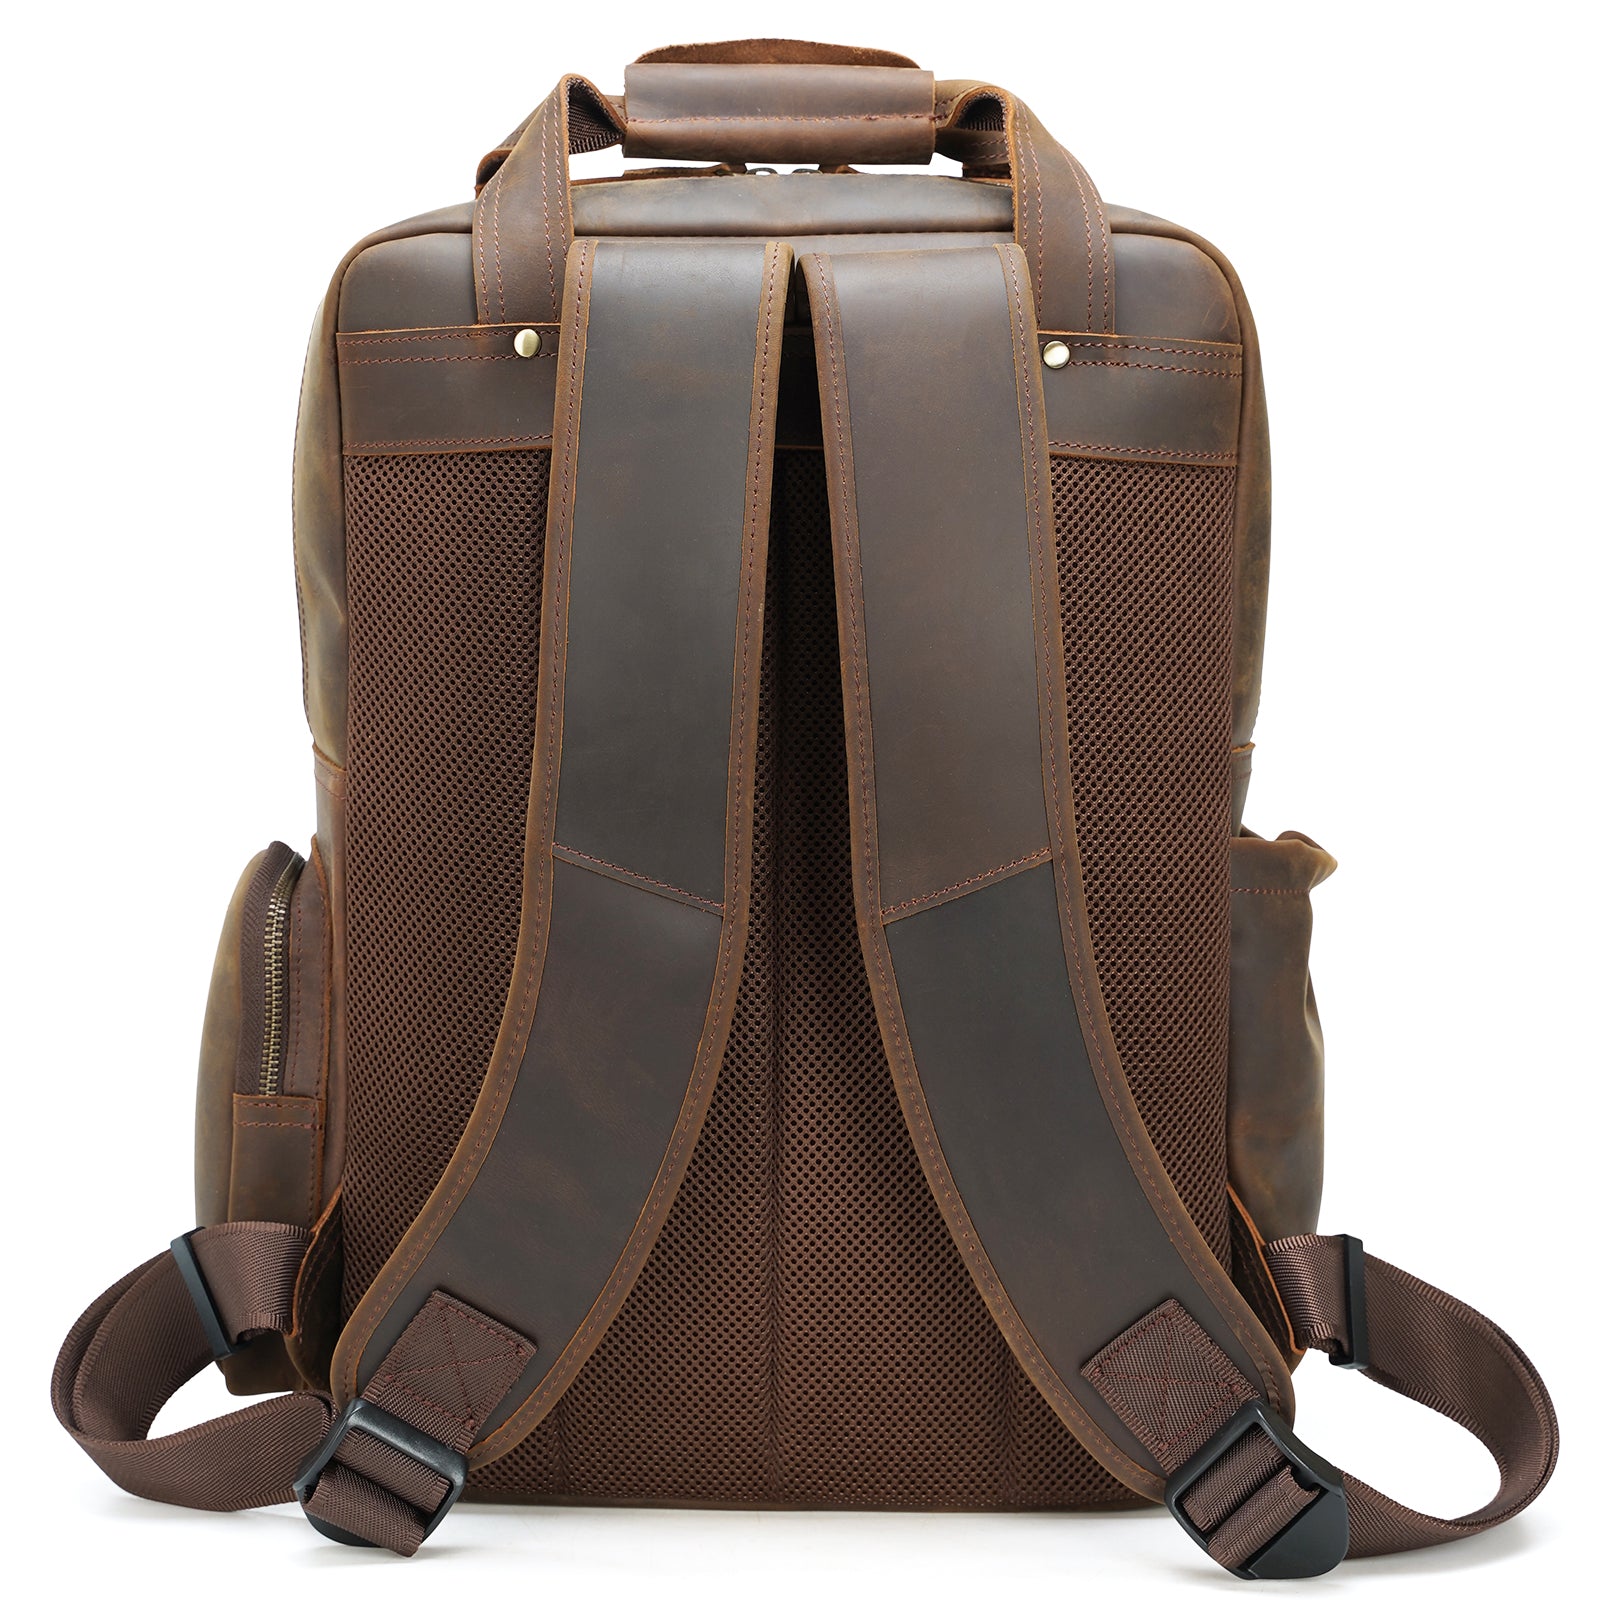 Polare Full Grain Italian Leather Backpack 15.6 Inch Laptop Bag Hiking Travel Rucksack (Back)